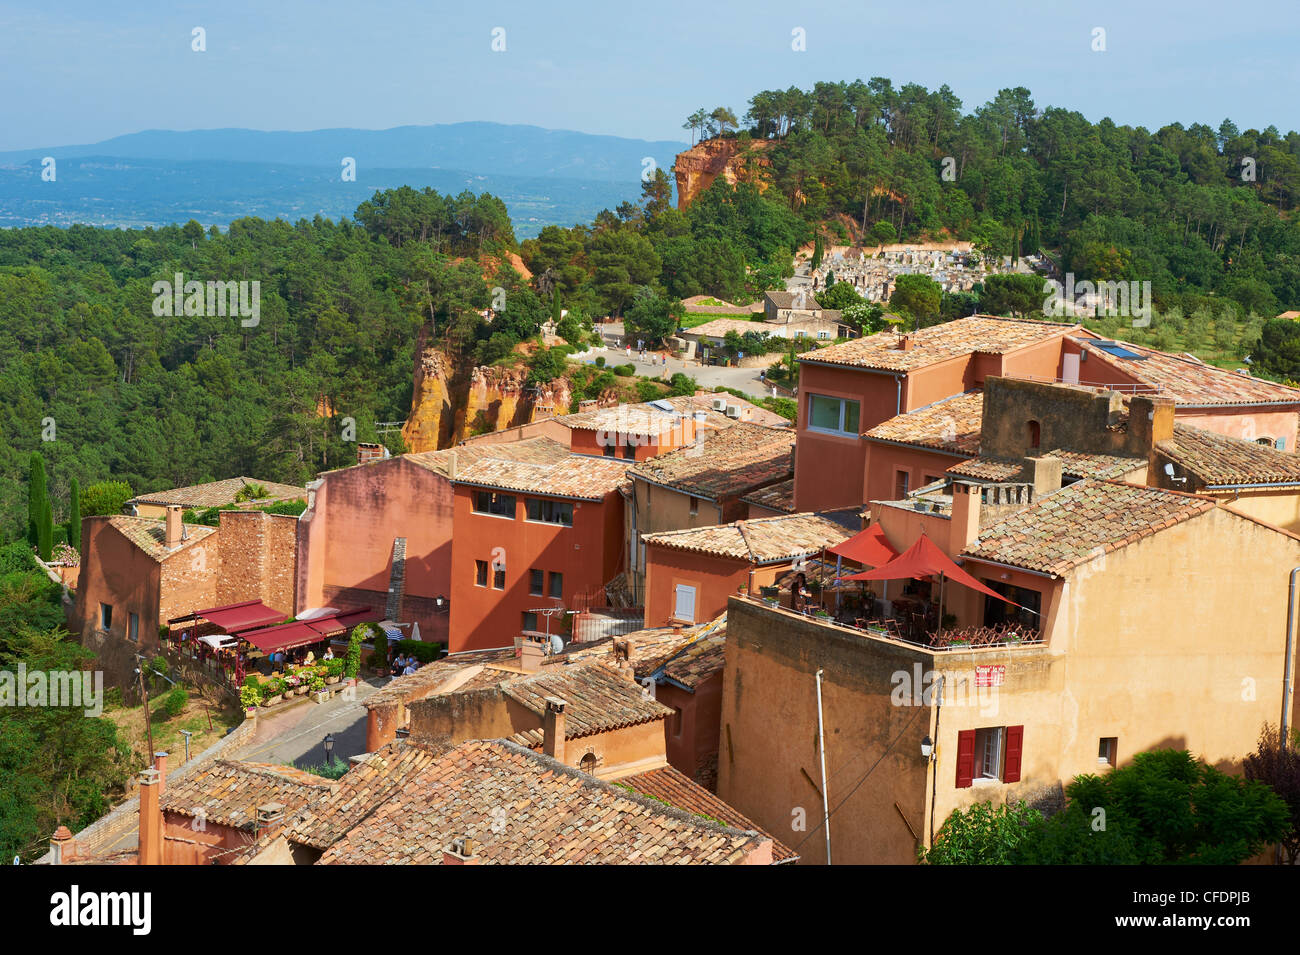 Village de Roussillon, Luberon, Vaucluse, Provence, France, Europe Banque D'Images